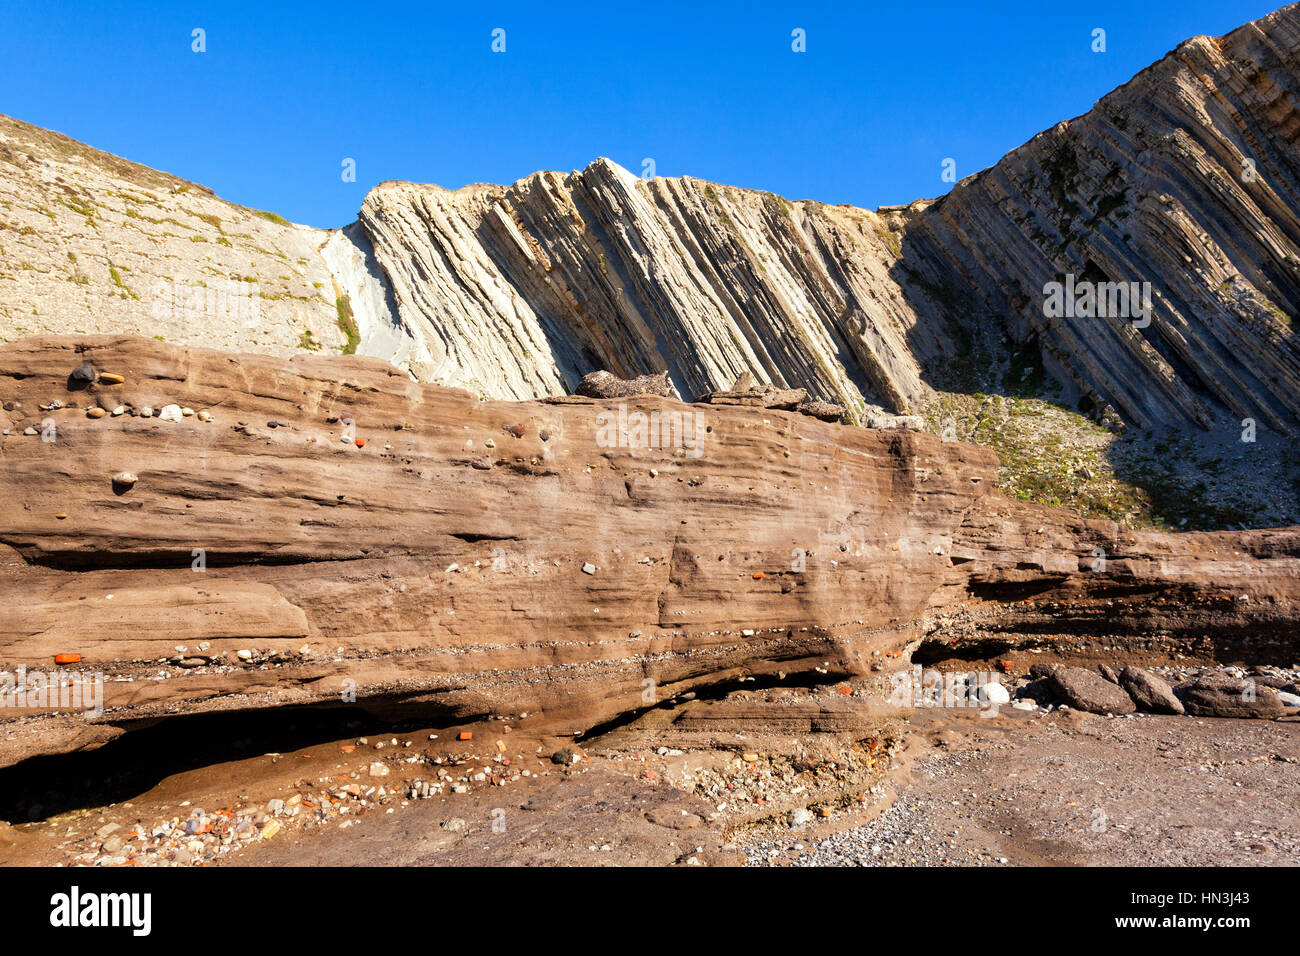 Tunelboca zementiert Strand von Biskay, Spanien. Sampleof das Anthropozän Ära Alter, mit einer 7 m Schicht aus industriellen Ablagerungen an der Küste Stockfoto